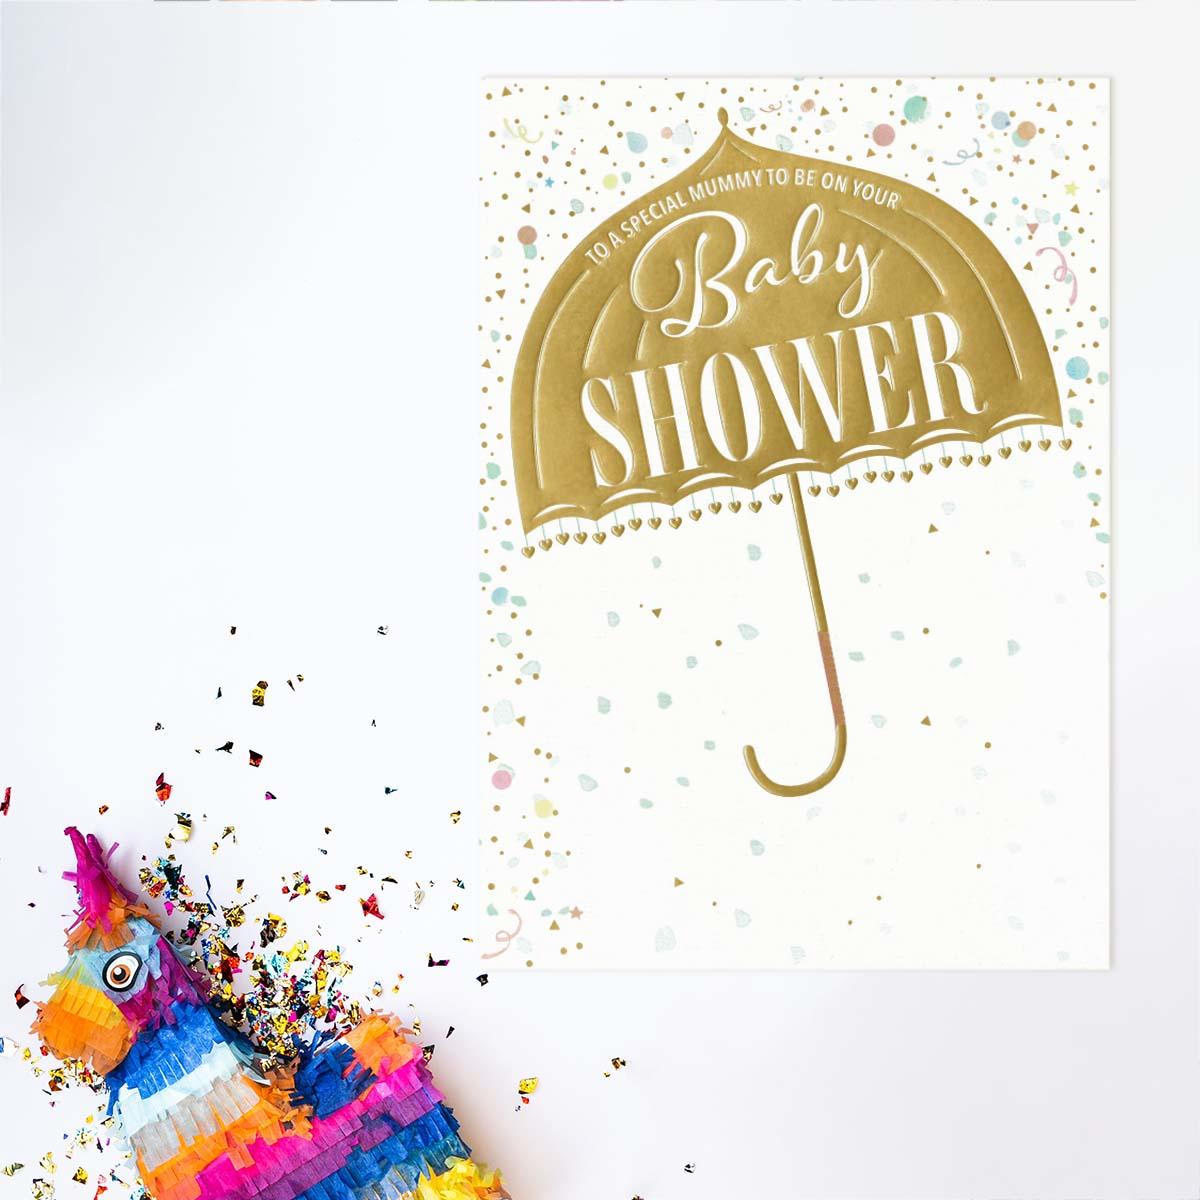 Baby Shower Design Shown Full Image